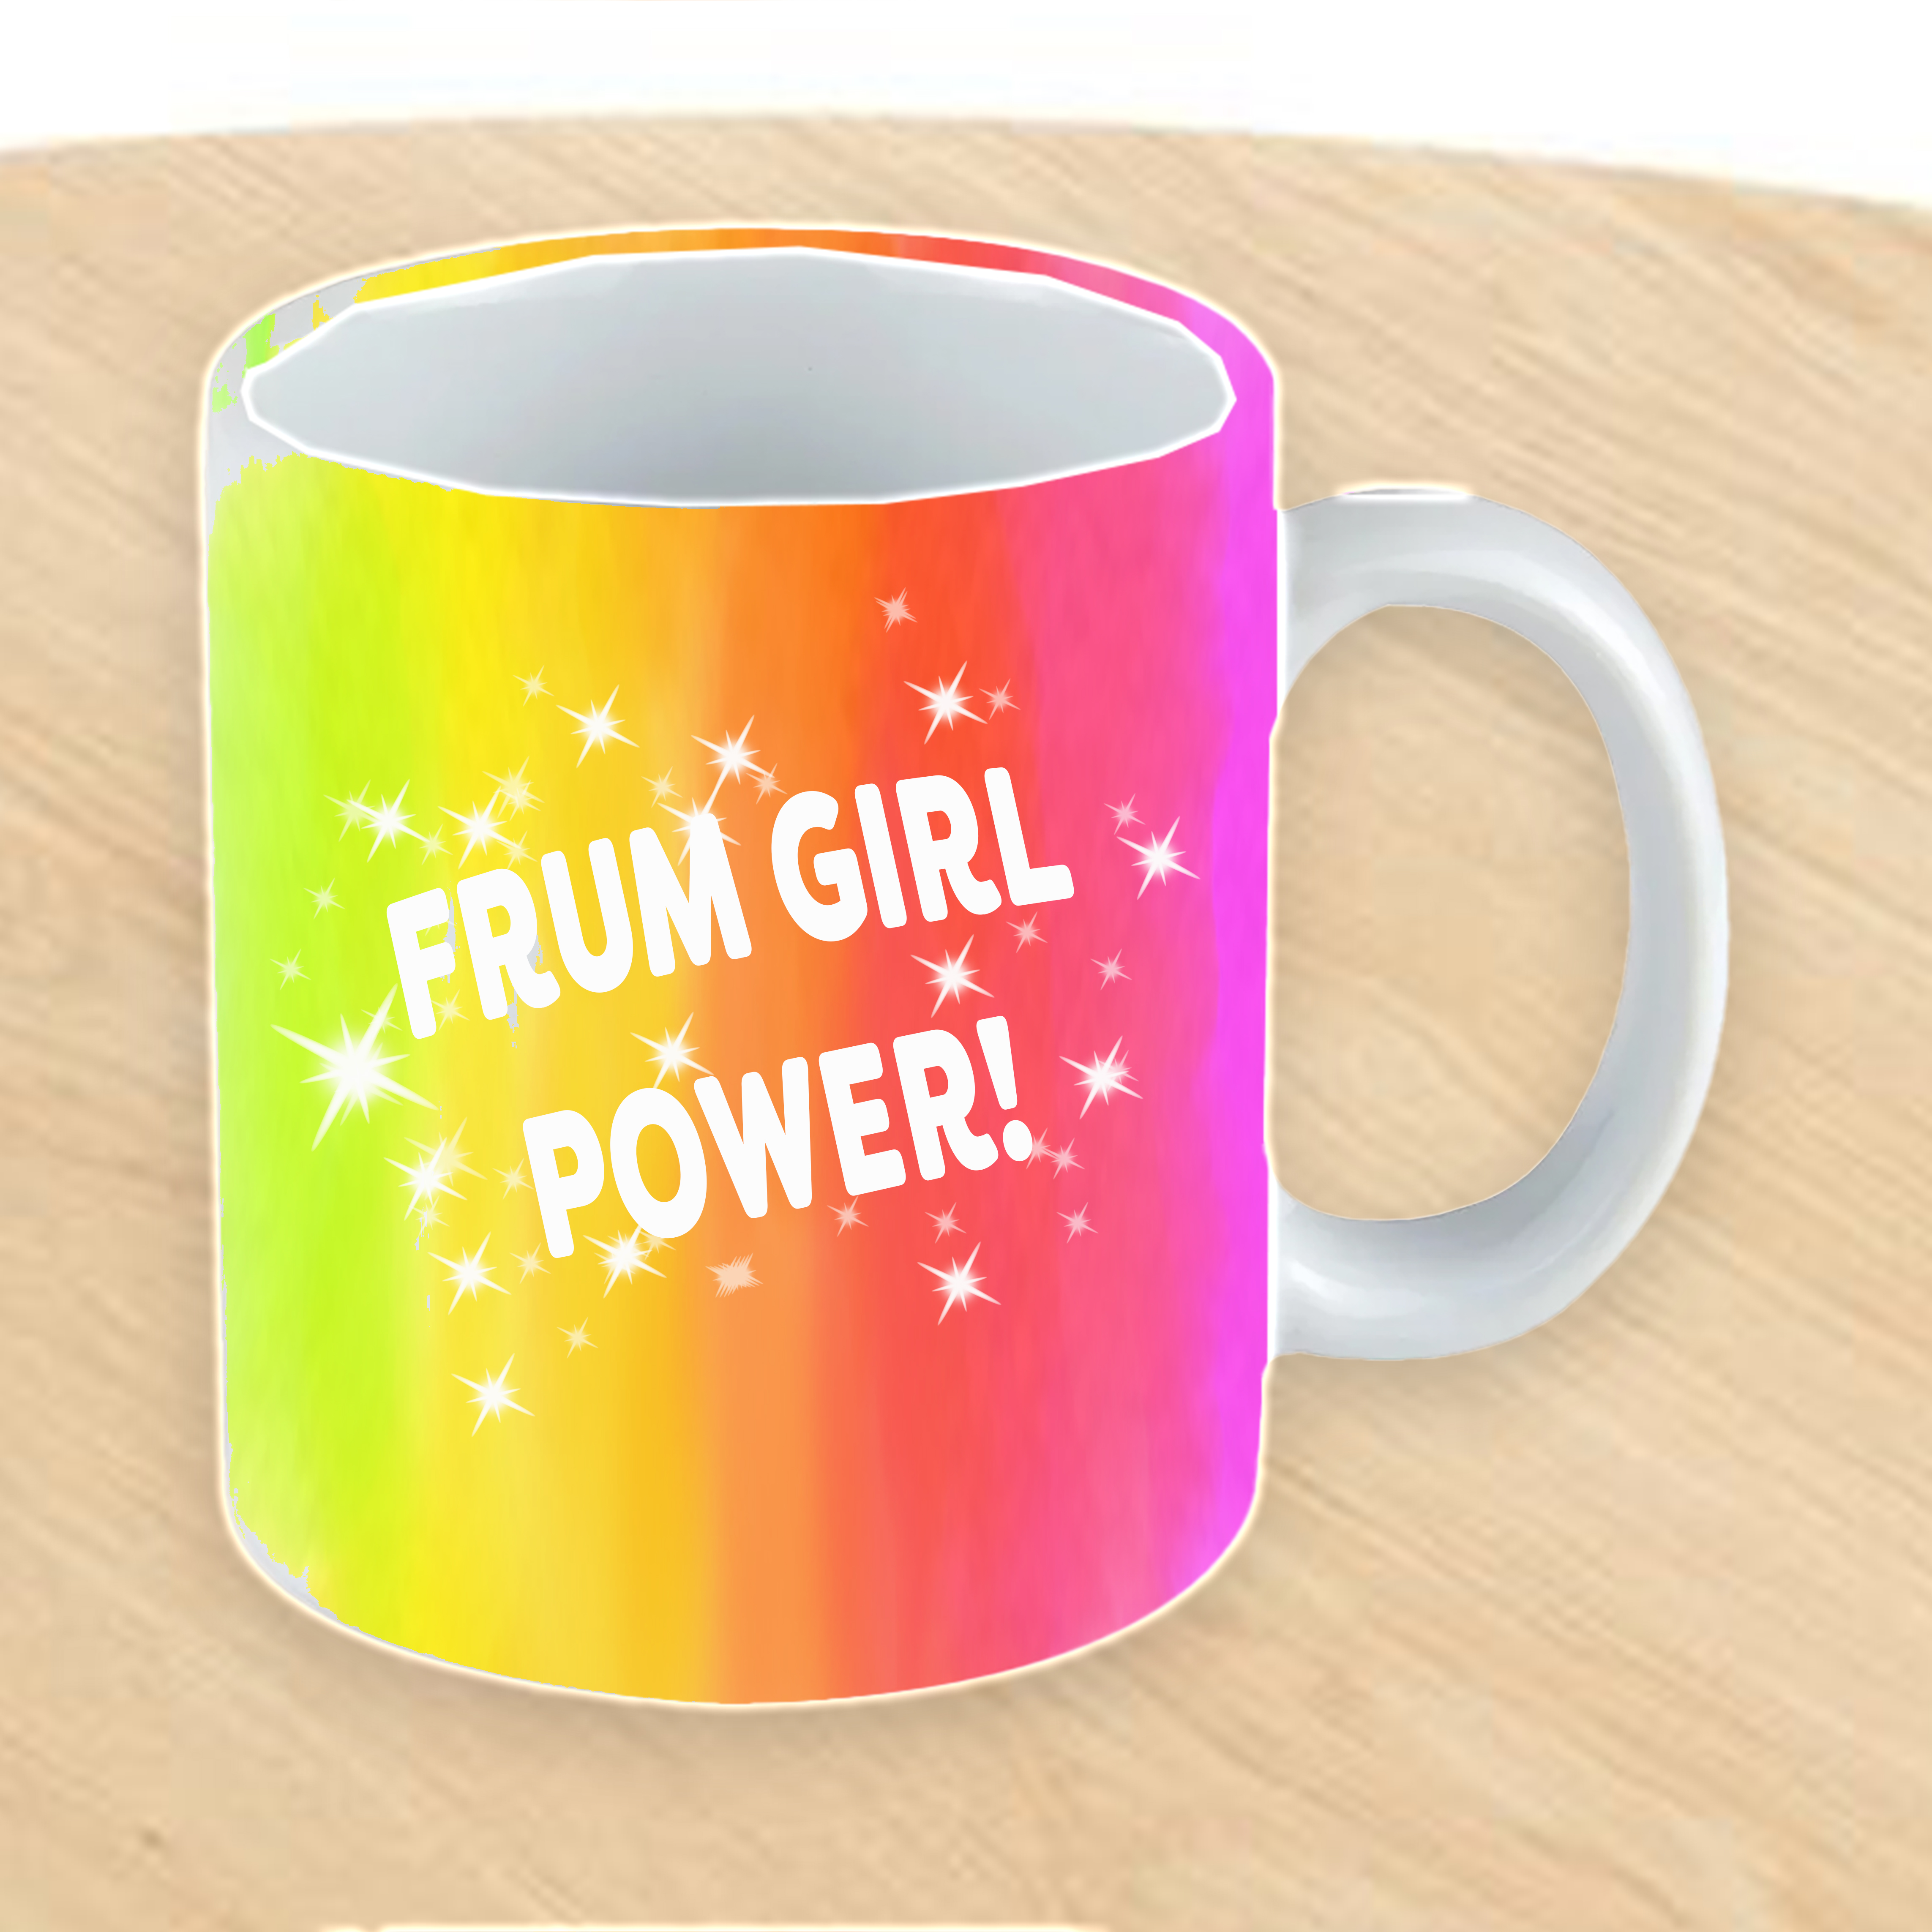 Frum Power Mug